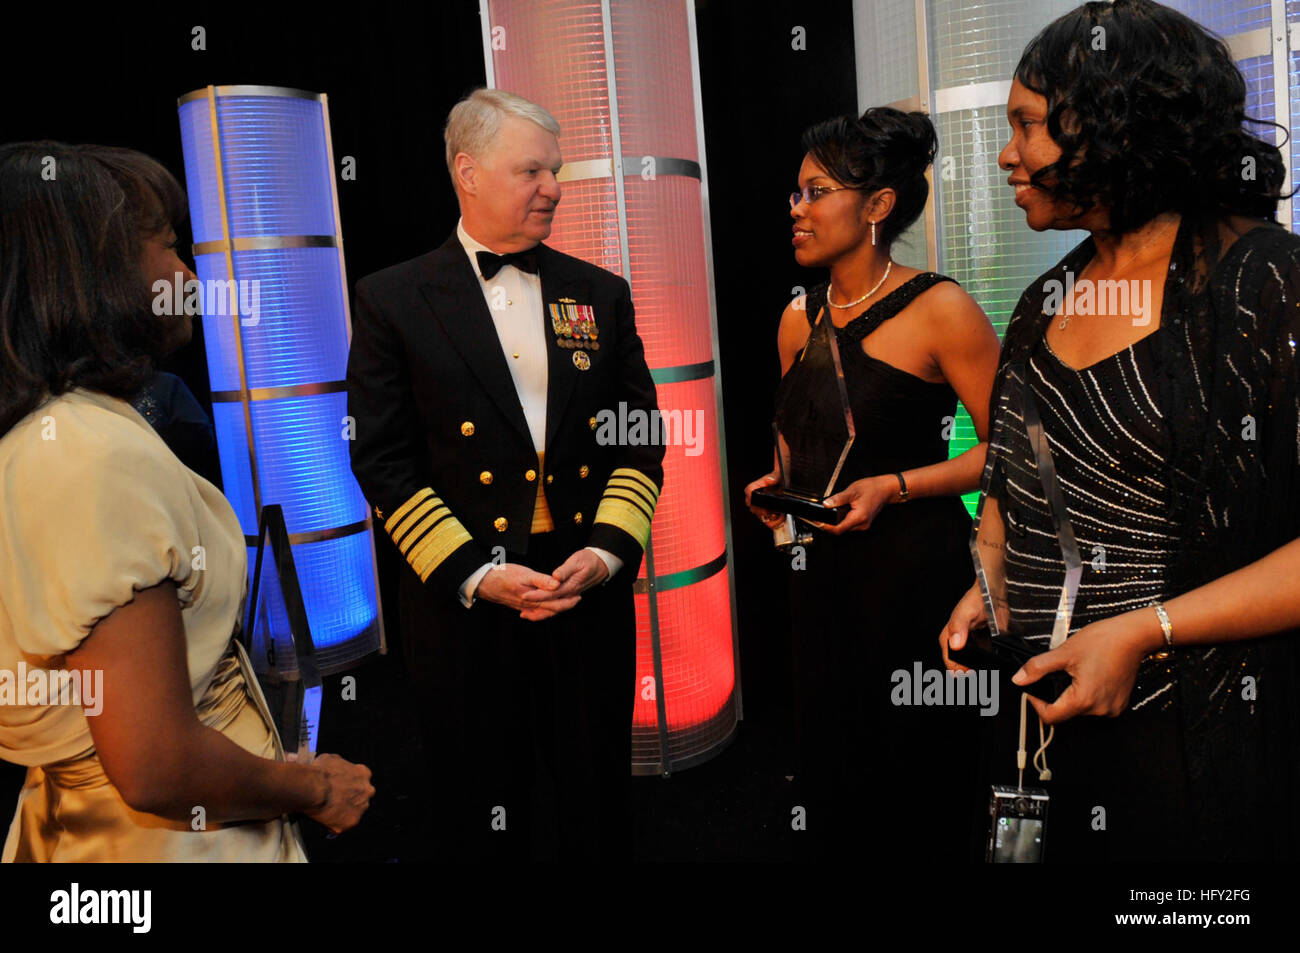 100220-N-8273J-118 BALTIMORE (fév. 20, 2010) Le chef des opérations navales (ONC) Adm. Gary Rougehead, milieu, félicite les lauréats des prix de l'ingénieur noir de l'année à l'issue de la 24e Black Ingénieur de l'année awards gala à Baltimore, Maryland (États-Unis Photos de la marine par la communication de masse 1ère classe Spécialiste/Vanderwsyt Tiffini Jones) Parution US Navy 100220-N-8273J-118, chef des opérations navales (ONC) Adm. Gary Rougehead, milieu, félicite les lauréats des prix de l'ingénieur noir de l'année Banque D'Images